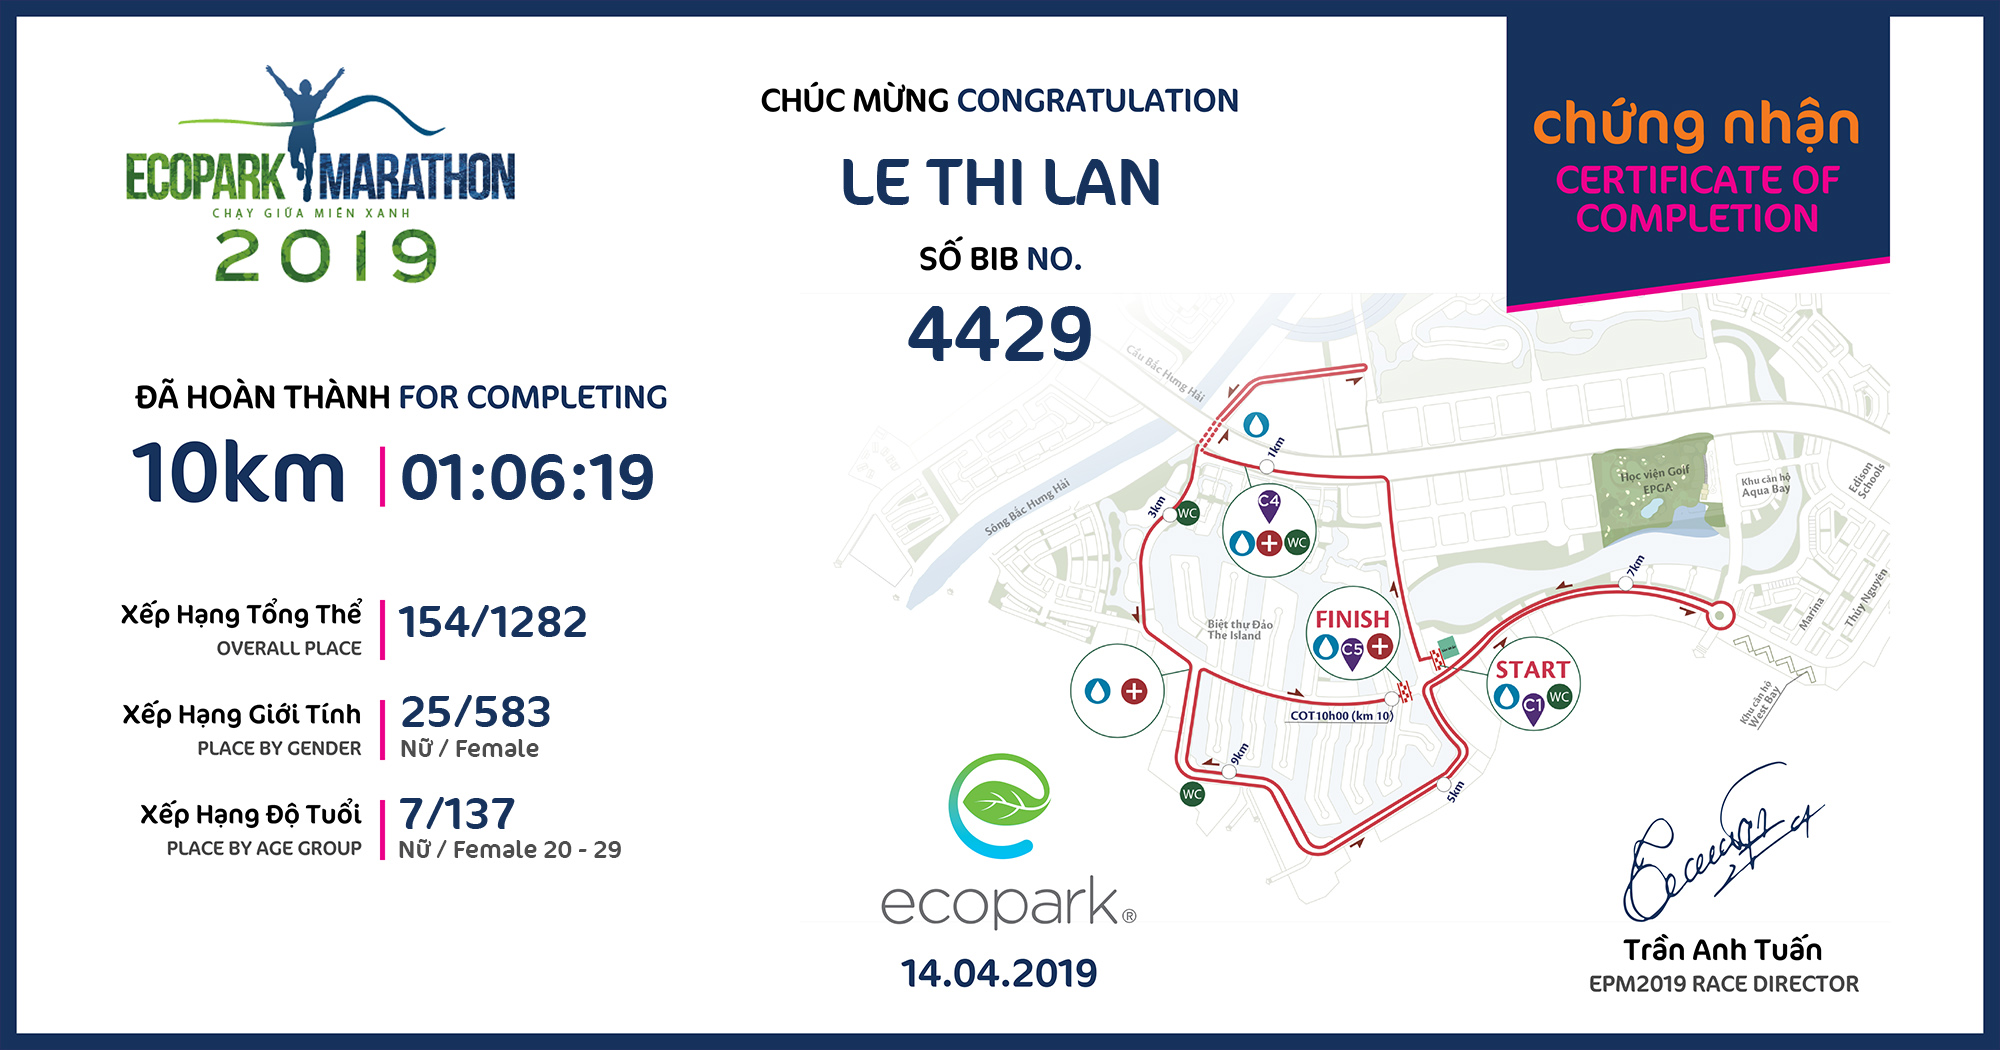 4429 - Le Thi Lan